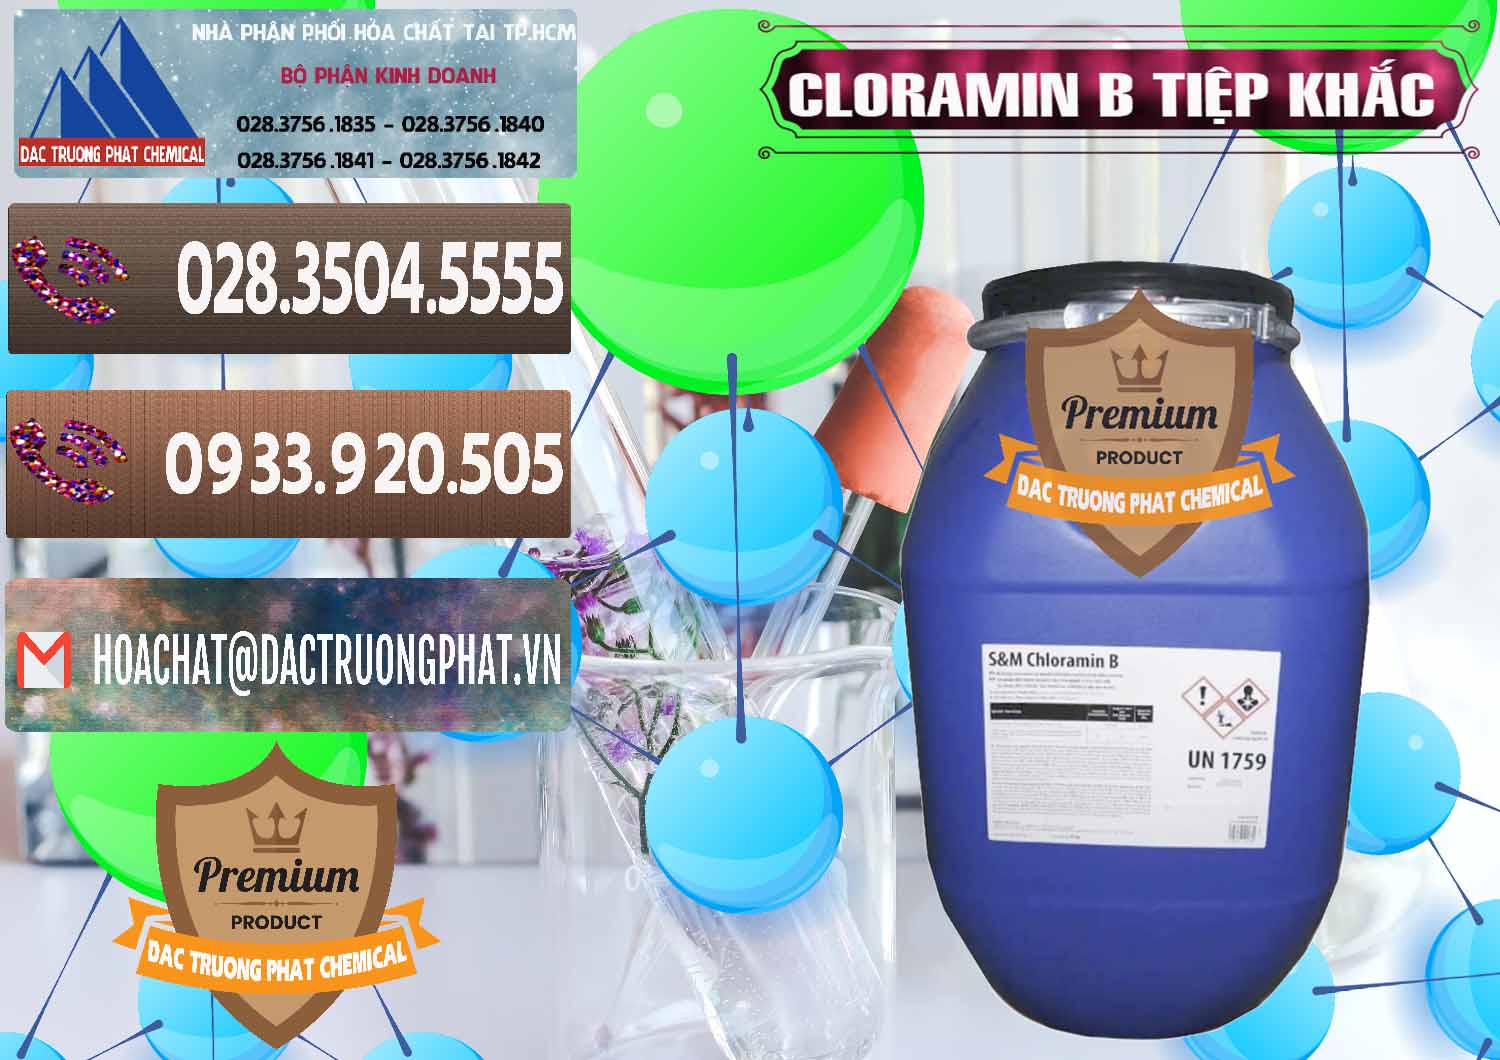 Đơn vị chuyên cung cấp và bán Cloramin B Cộng Hòa Séc Tiệp Khắc Czech Republic - 0299 - Nơi cung cấp ( phân phối ) hóa chất tại TP.HCM - hoachatviet.net